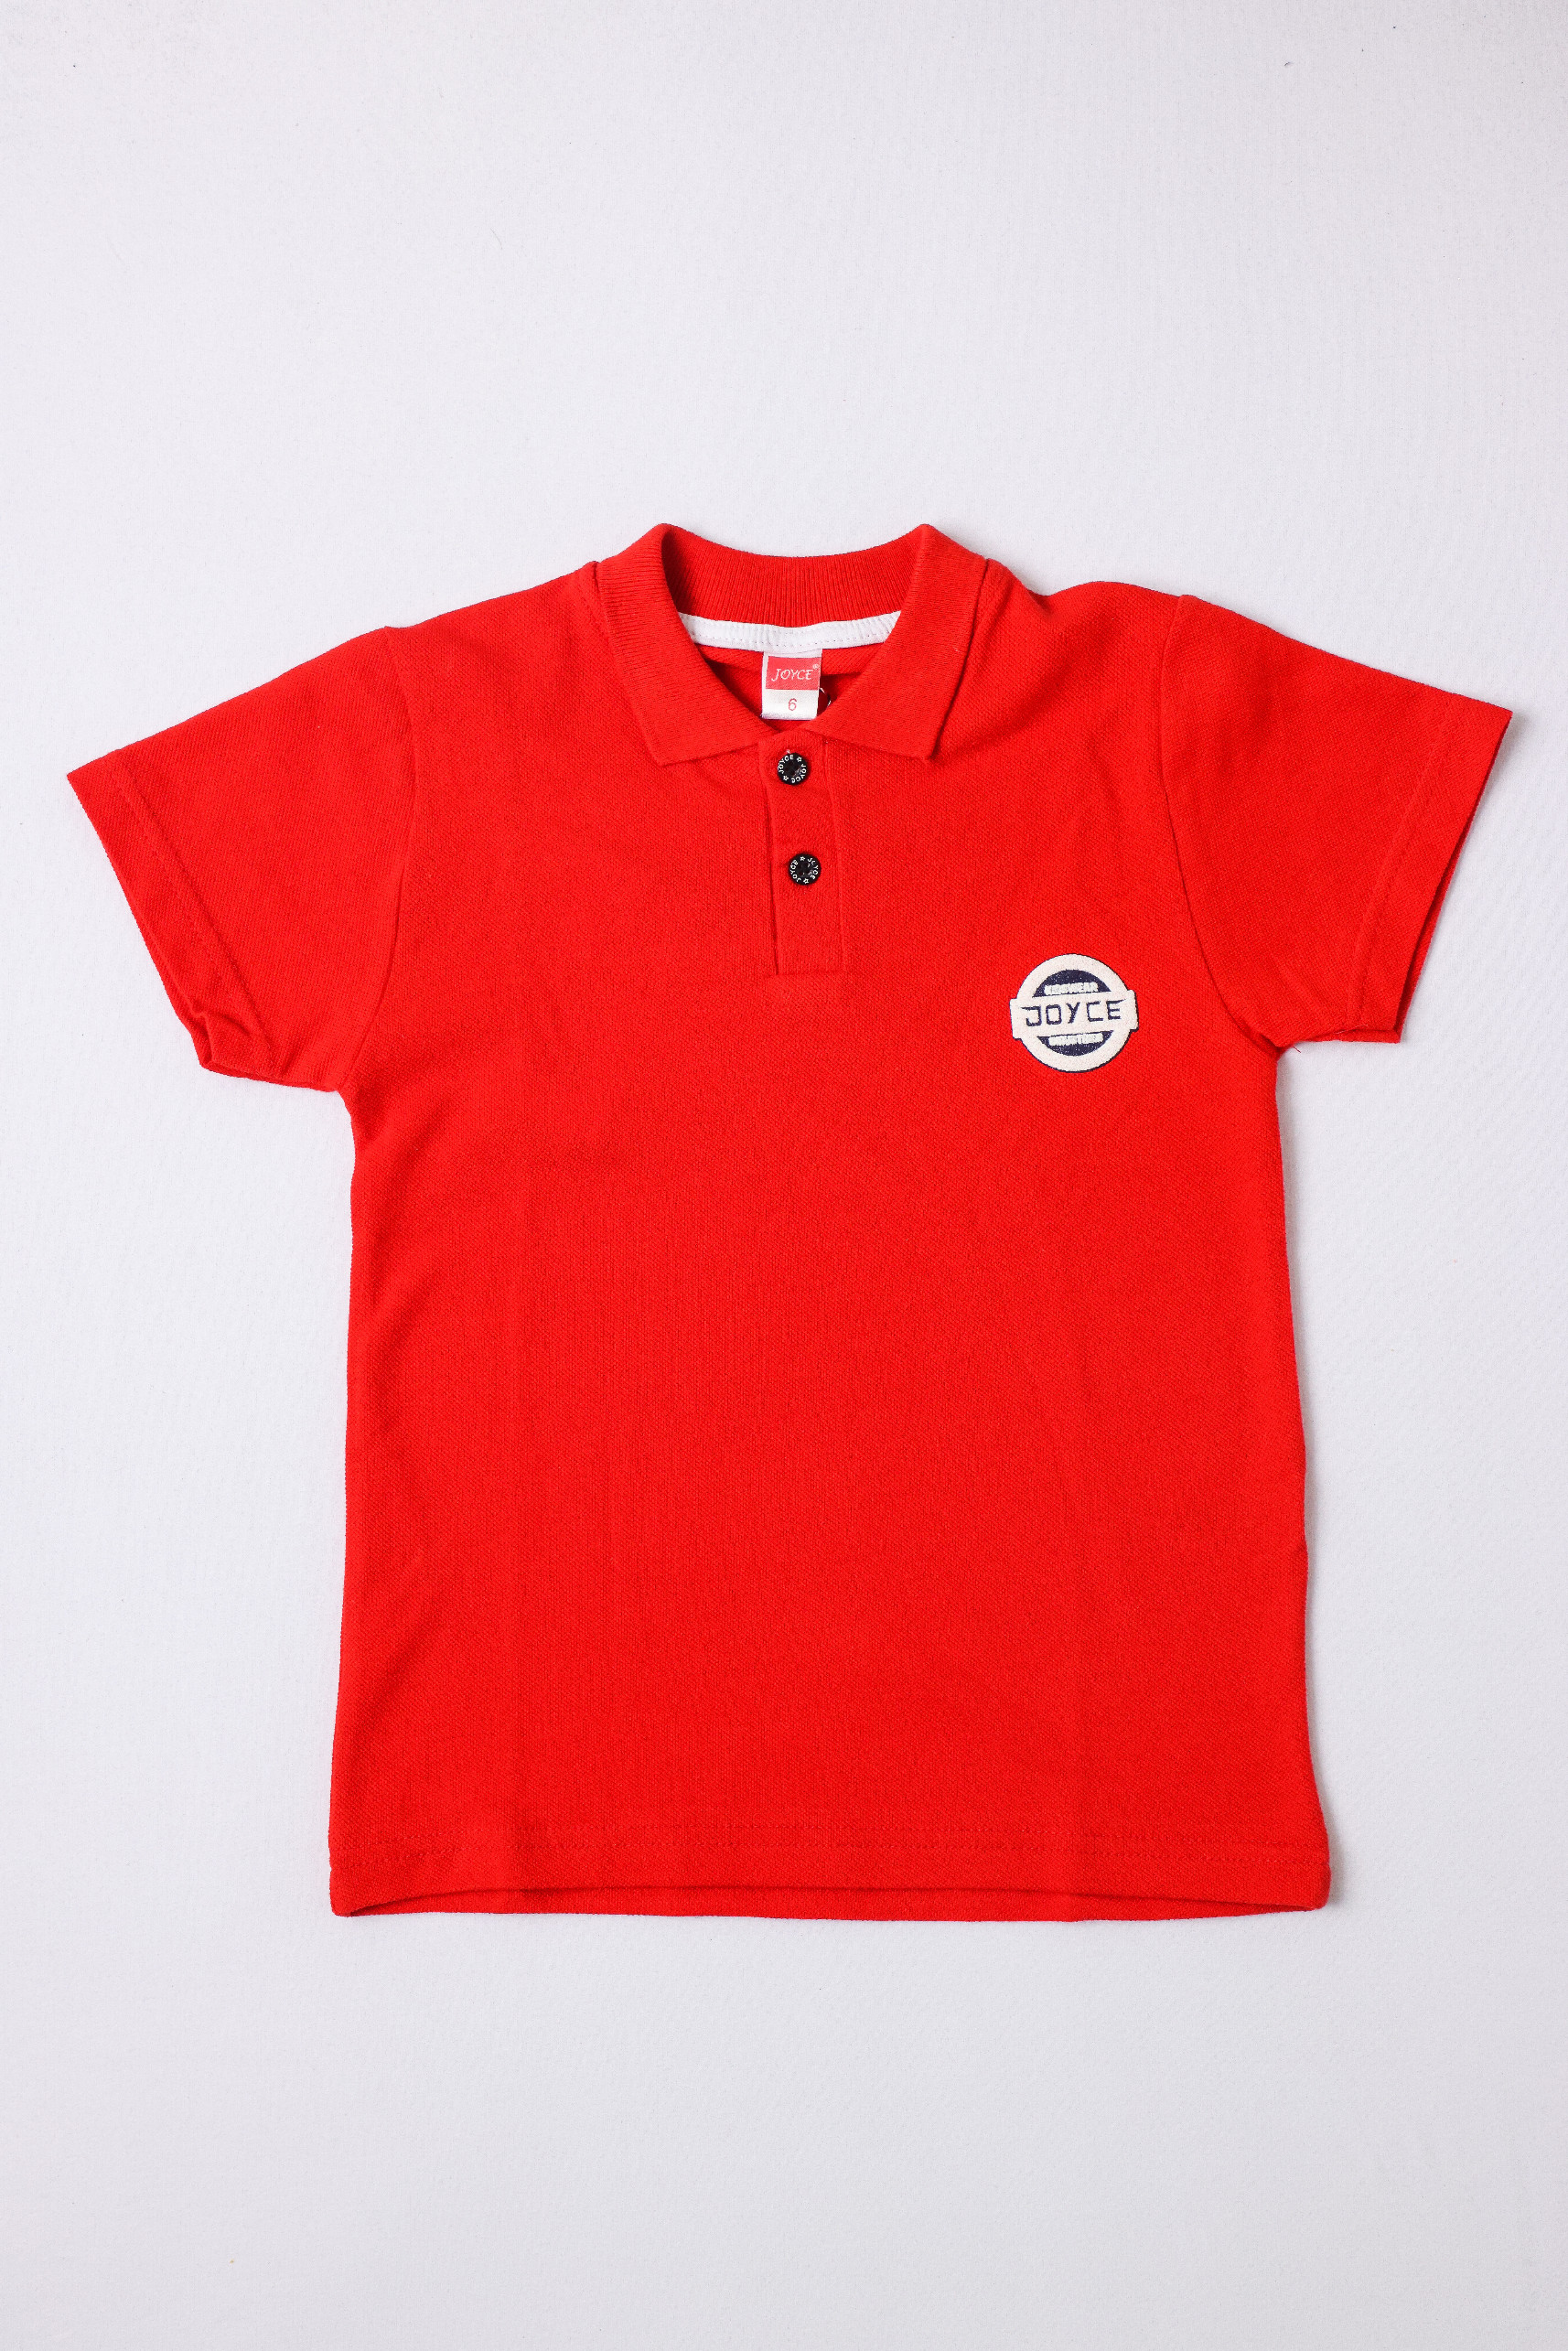 Chlapecké triko s límečkem "BASIC"/Modrá, červená, imperial blue Barva: Červená, Velikost: Vel. 12 (144/150 cm)